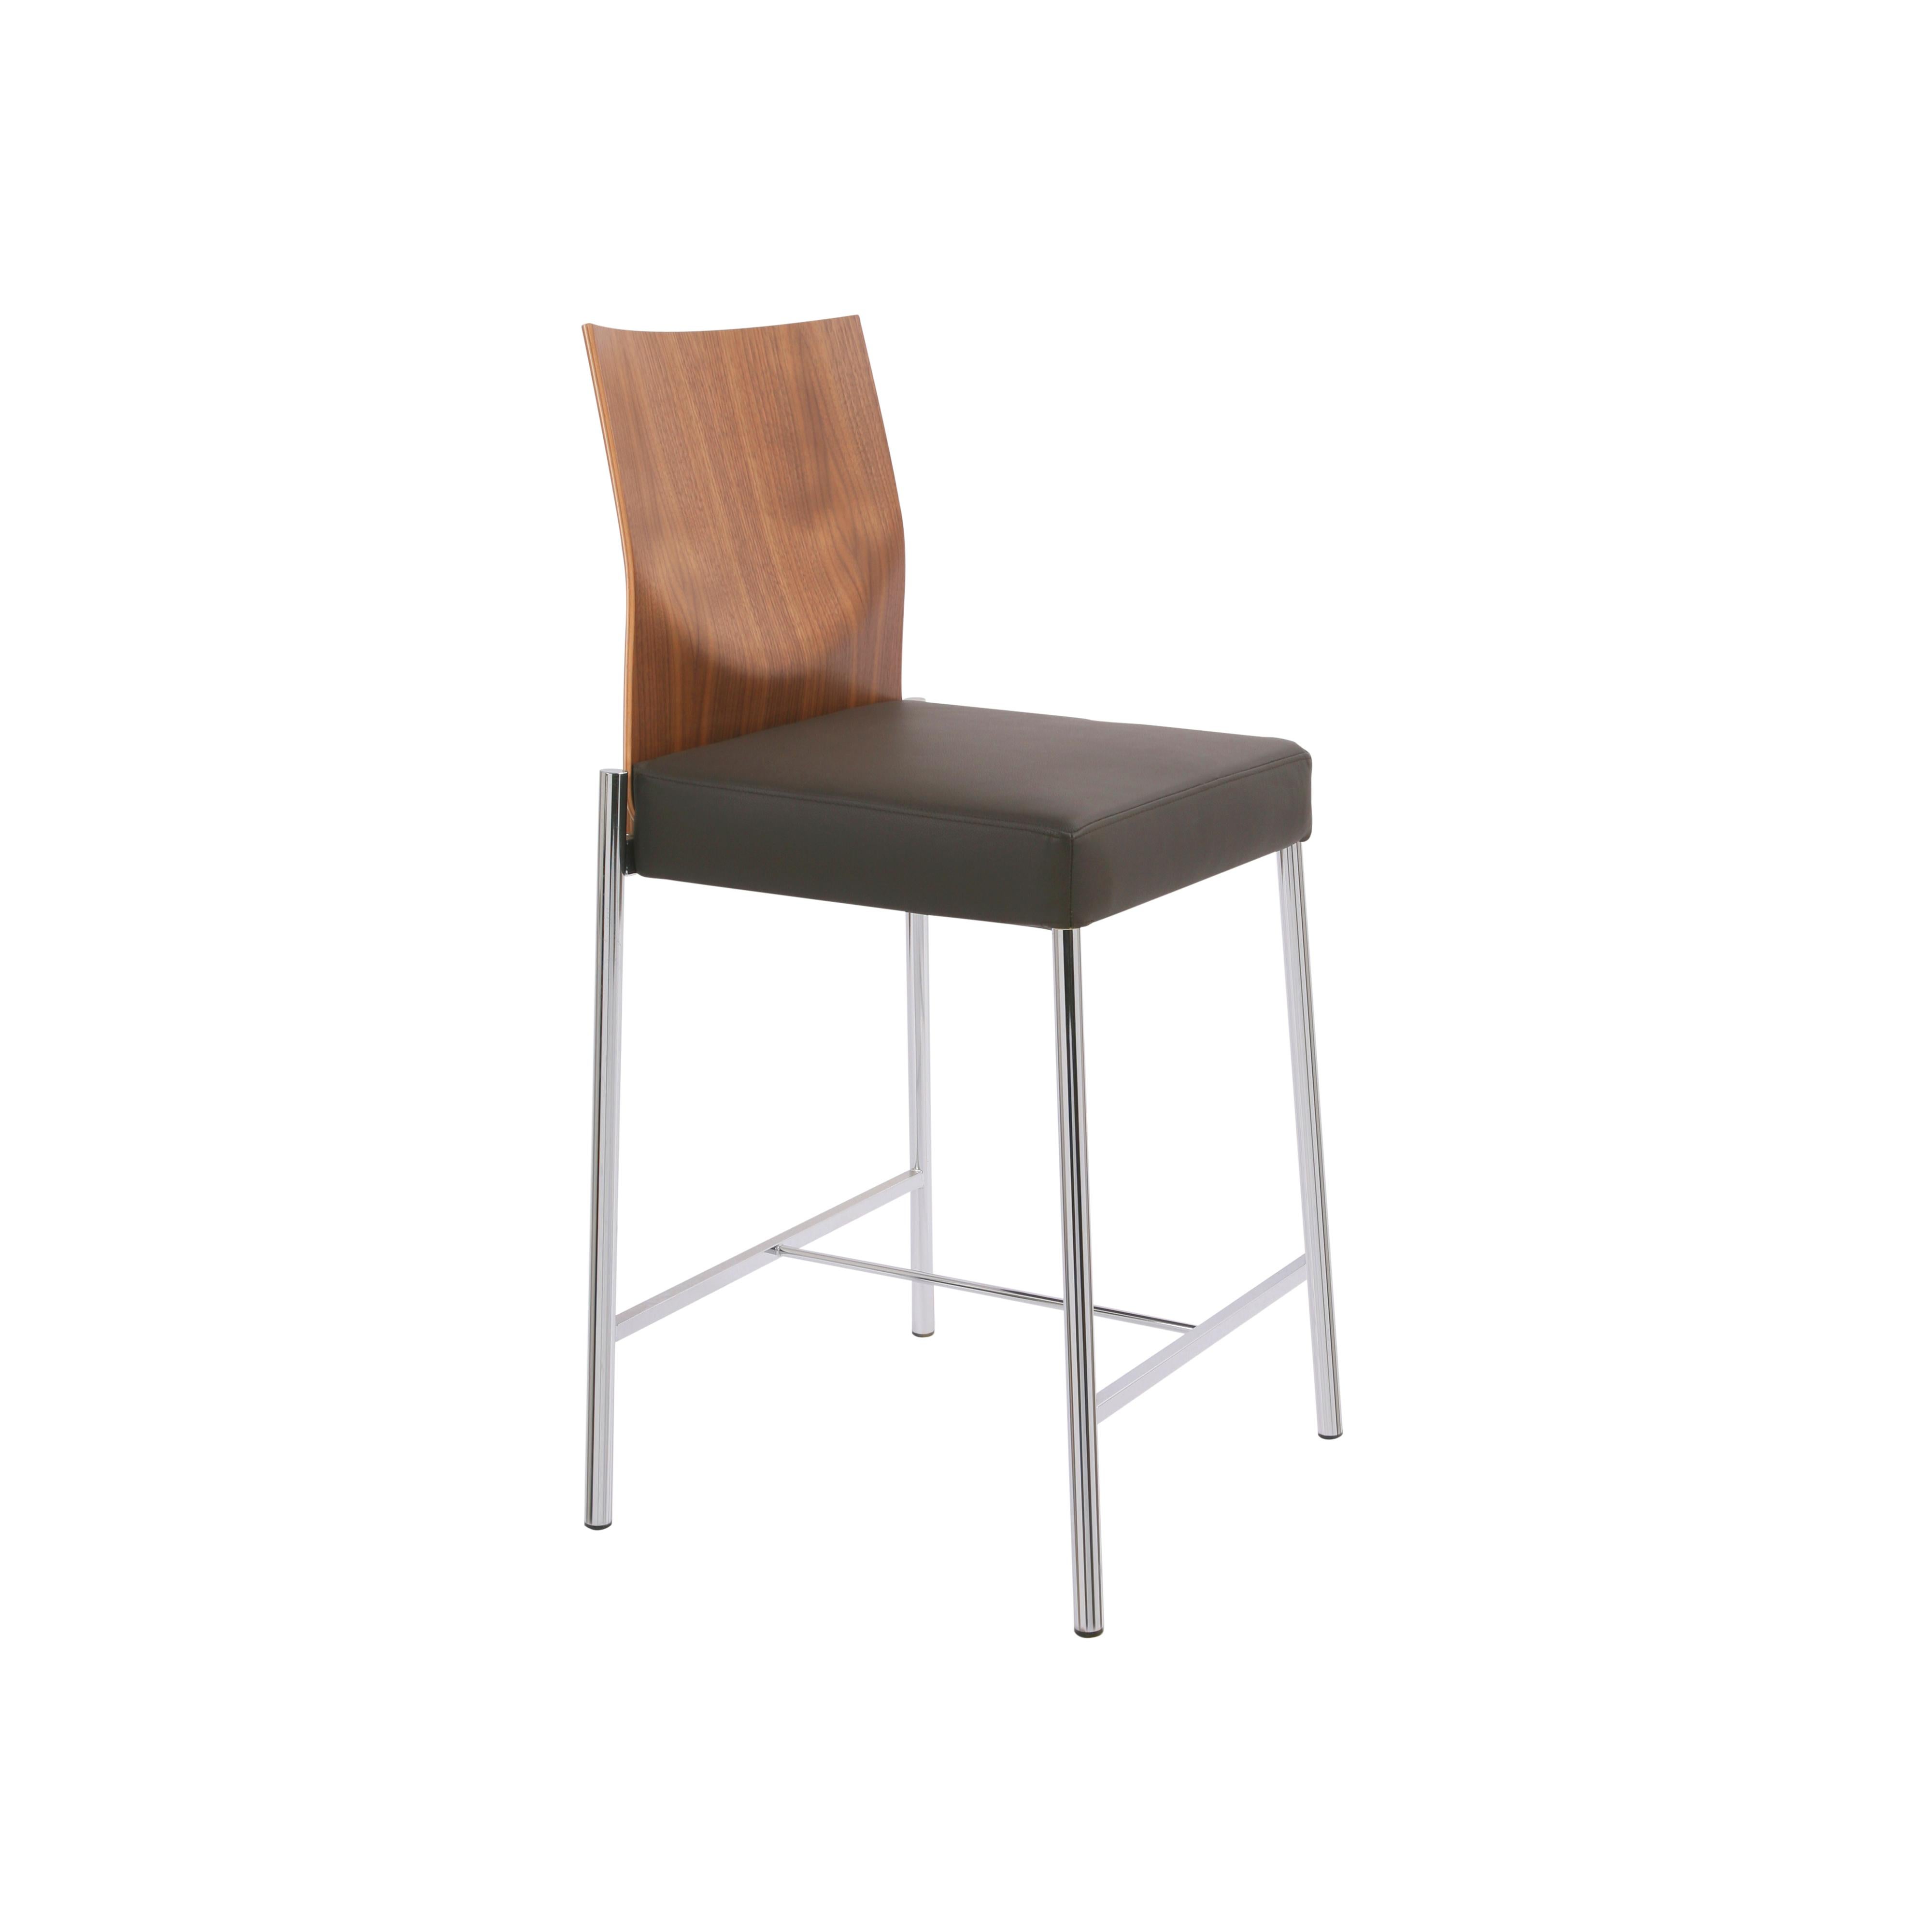 Un concept - de nombreux prototypes : qu'il s'agisse de chaises classiques, de cabriolets ou de tabourets de bar, y compris ceux à ressort pneumatique, GLOOH, en plus d'offrir une gamme étendue et un grand confort, se distingue par un design